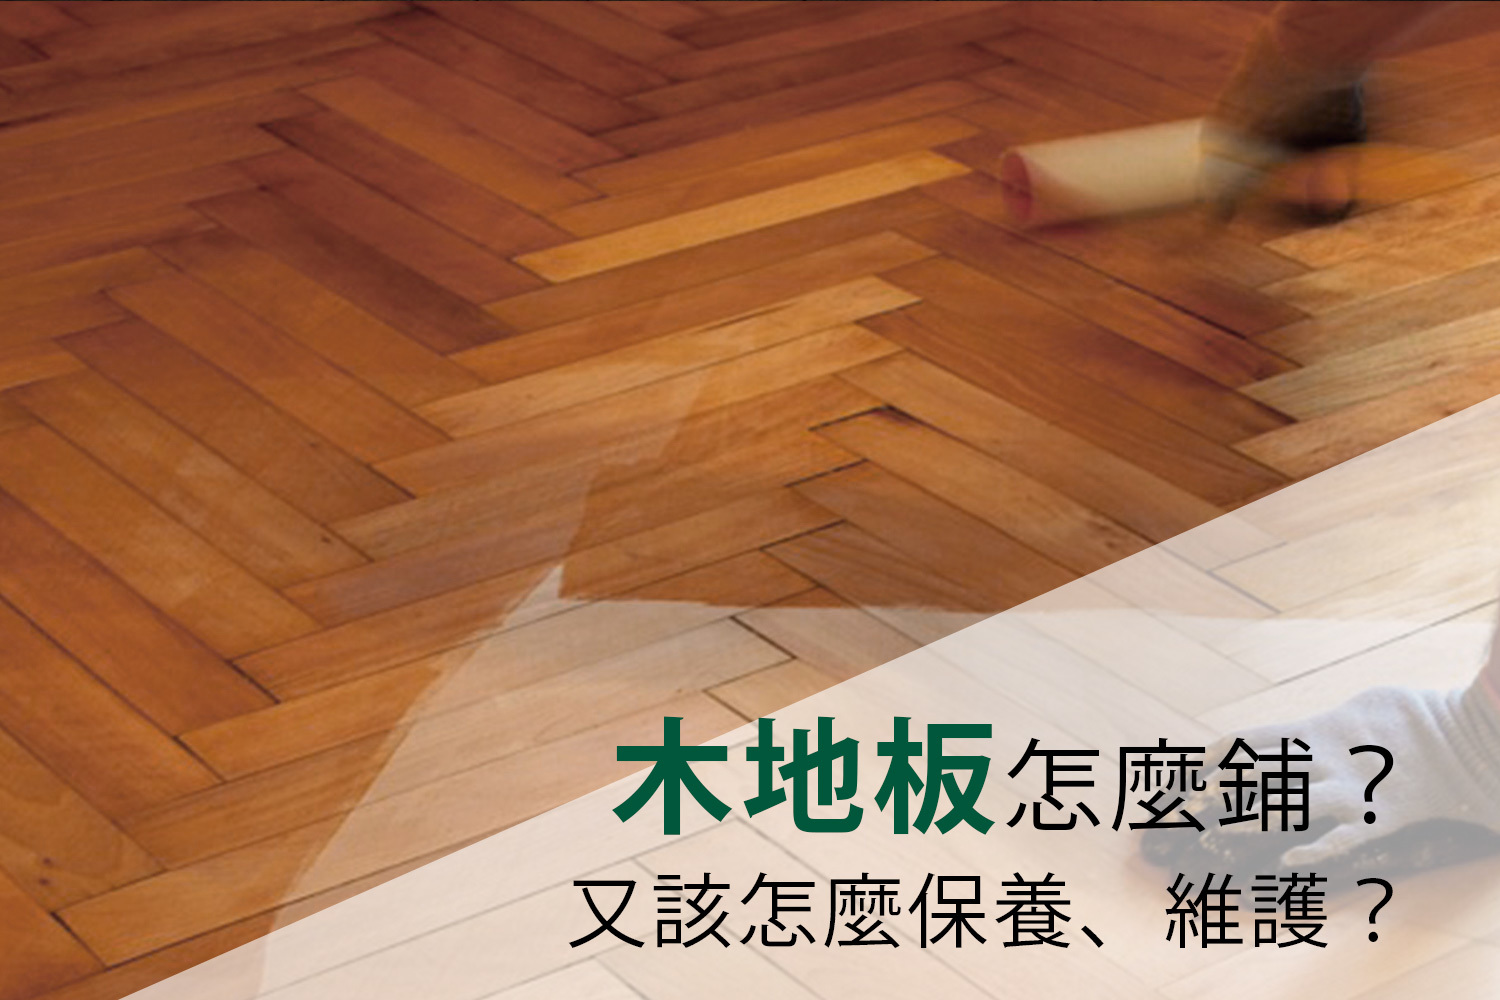 木地板施工法選擇